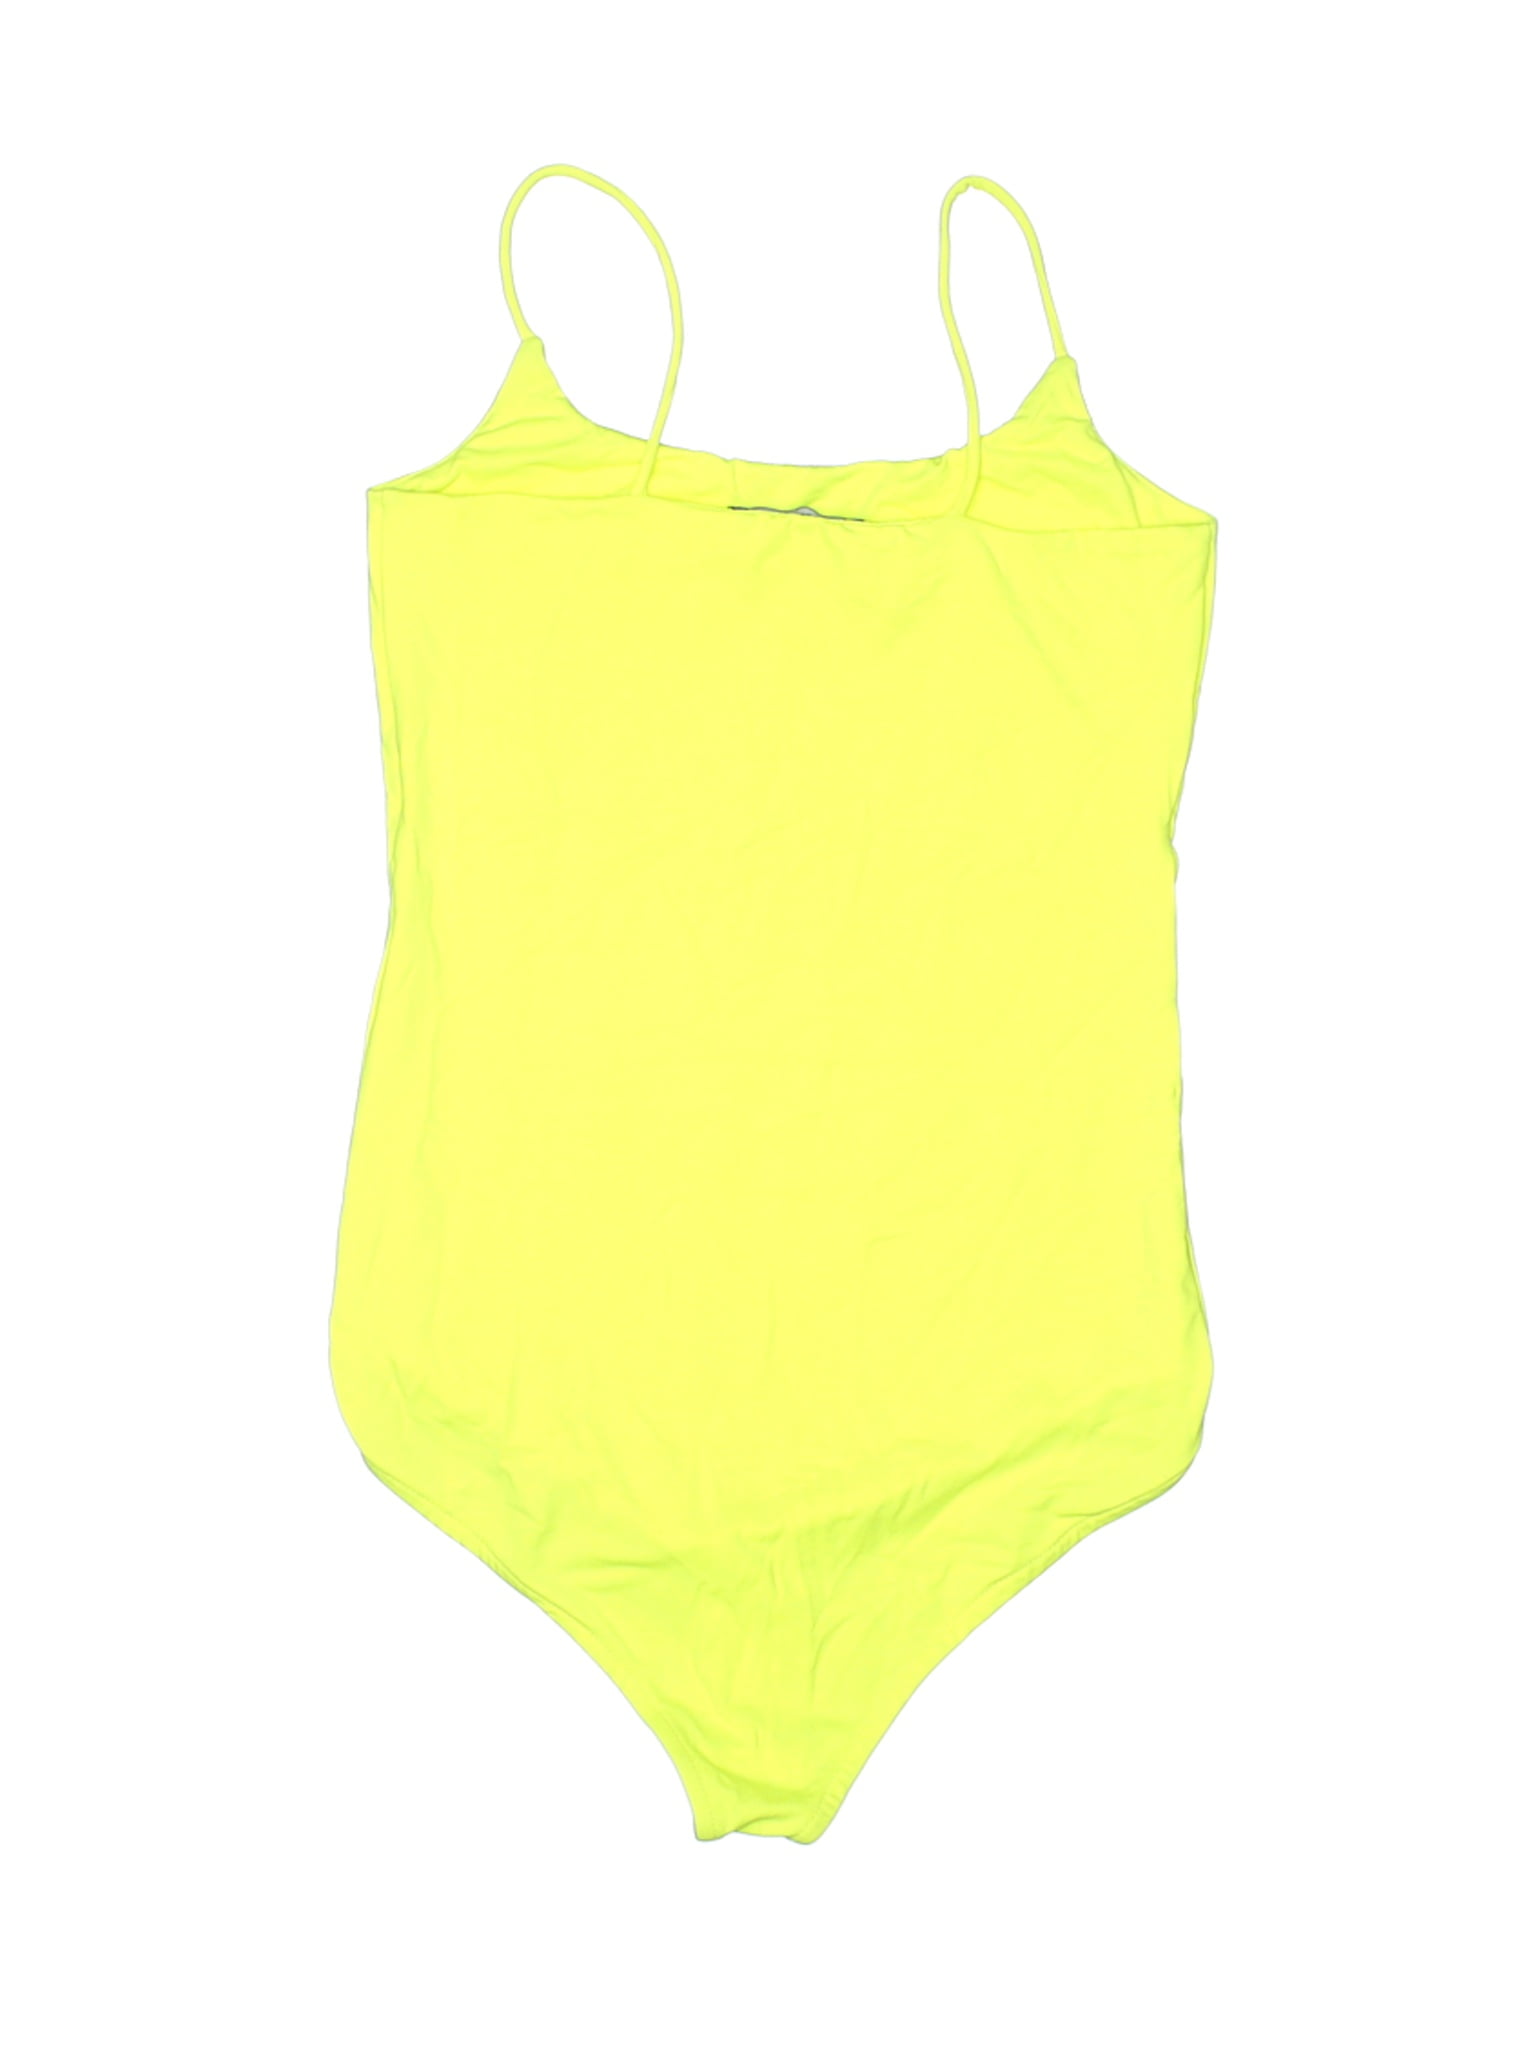 zara yellow swimsuit